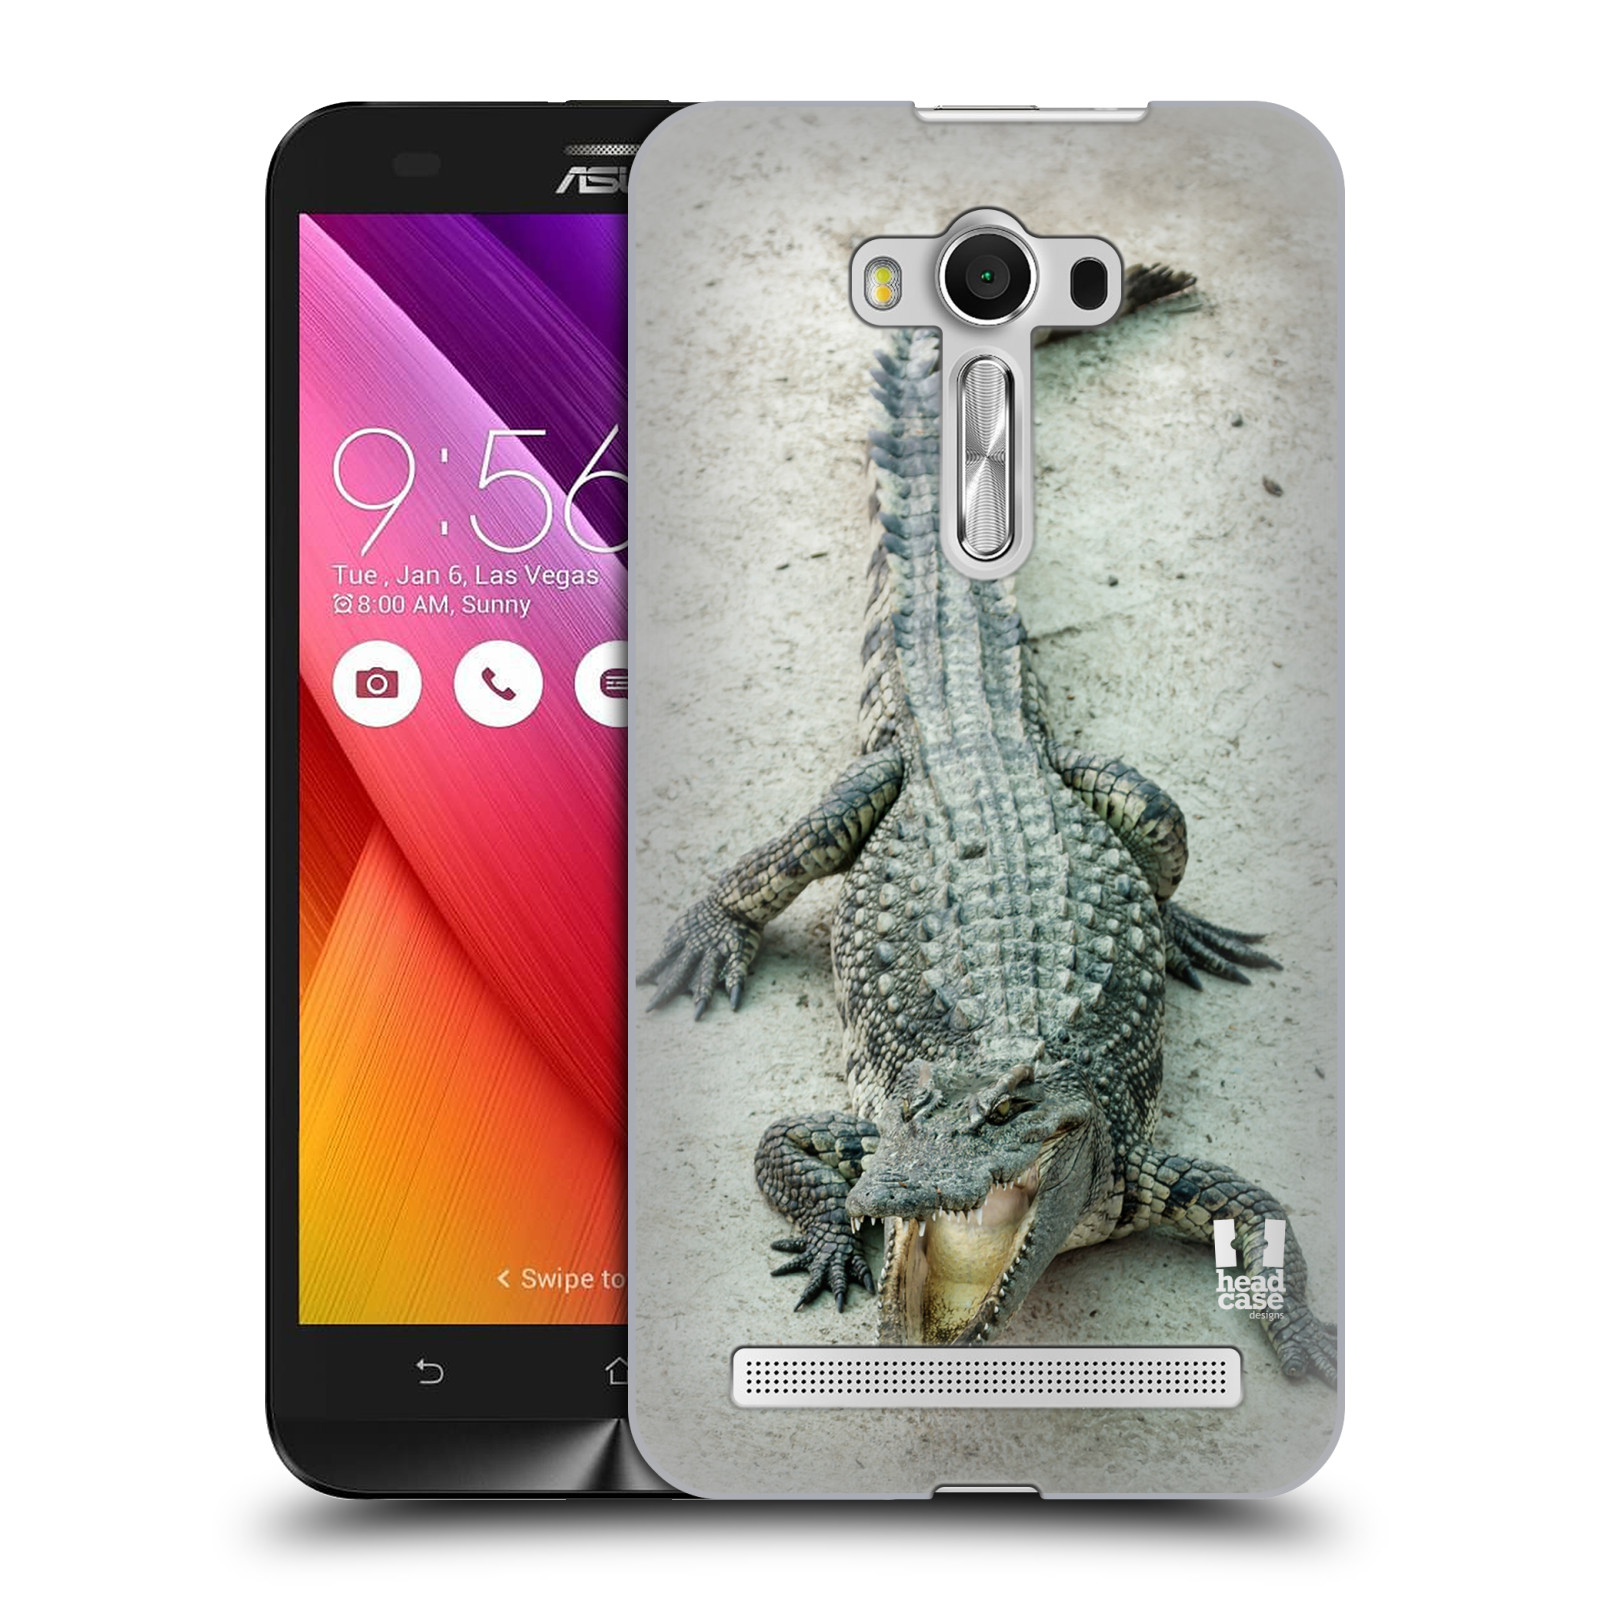 HEAD CASE plastový obal na mobil Asus Zenfone 2 LASER (5,5 displej ZE550KL) vzor Divočina, Divoký život a zvířata foto KROKODÝL, KAJMAN